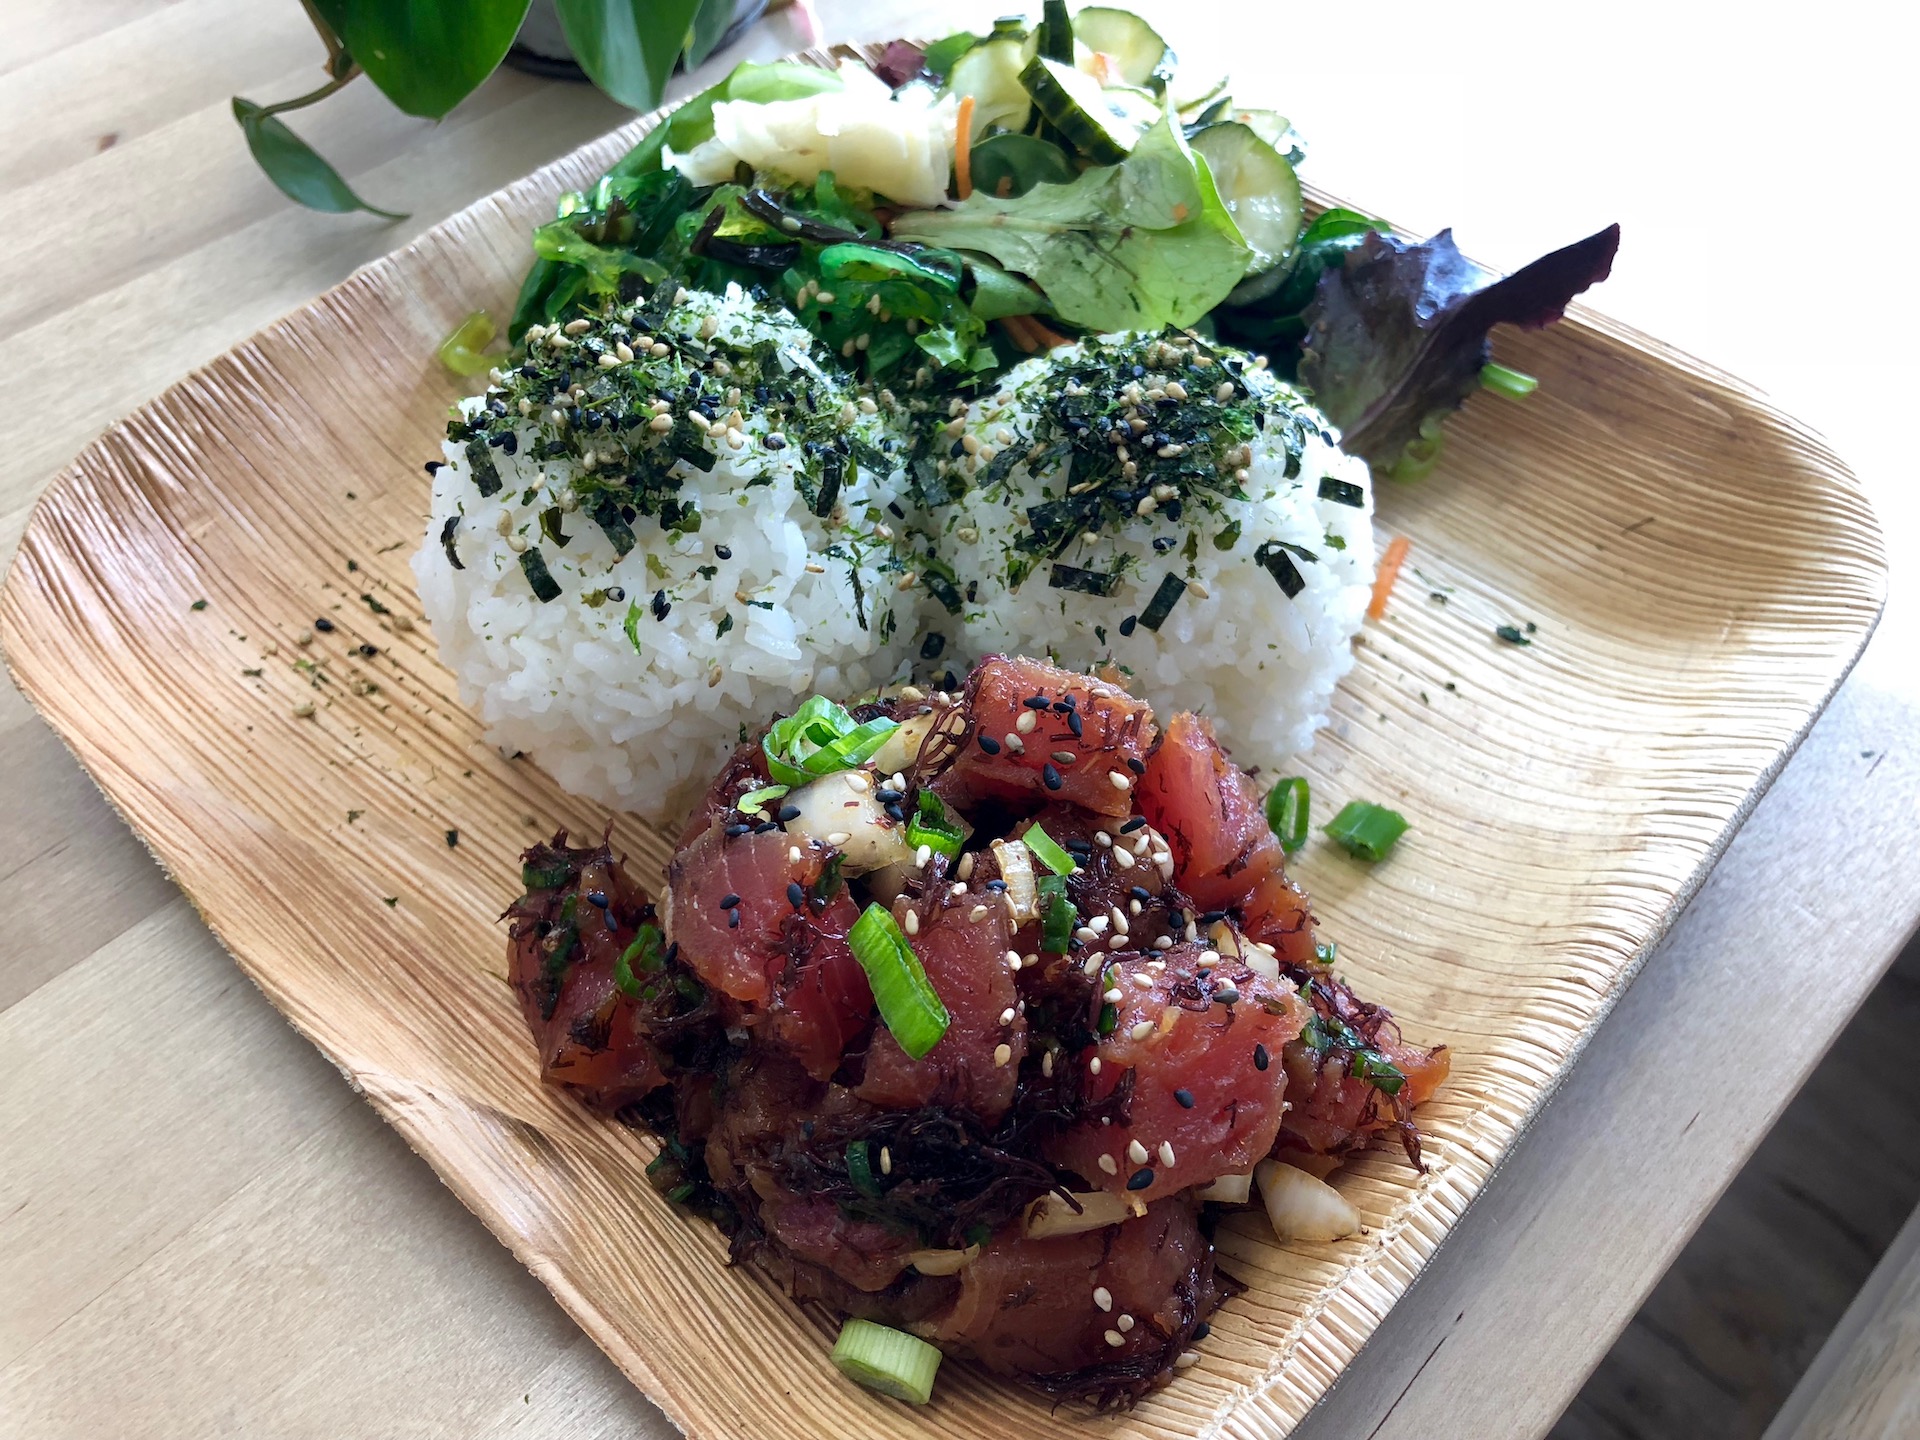 A ‘classic shoyu’ ahi poke rice plate at Sam Choy’s Poke to the Max in San Bruno.